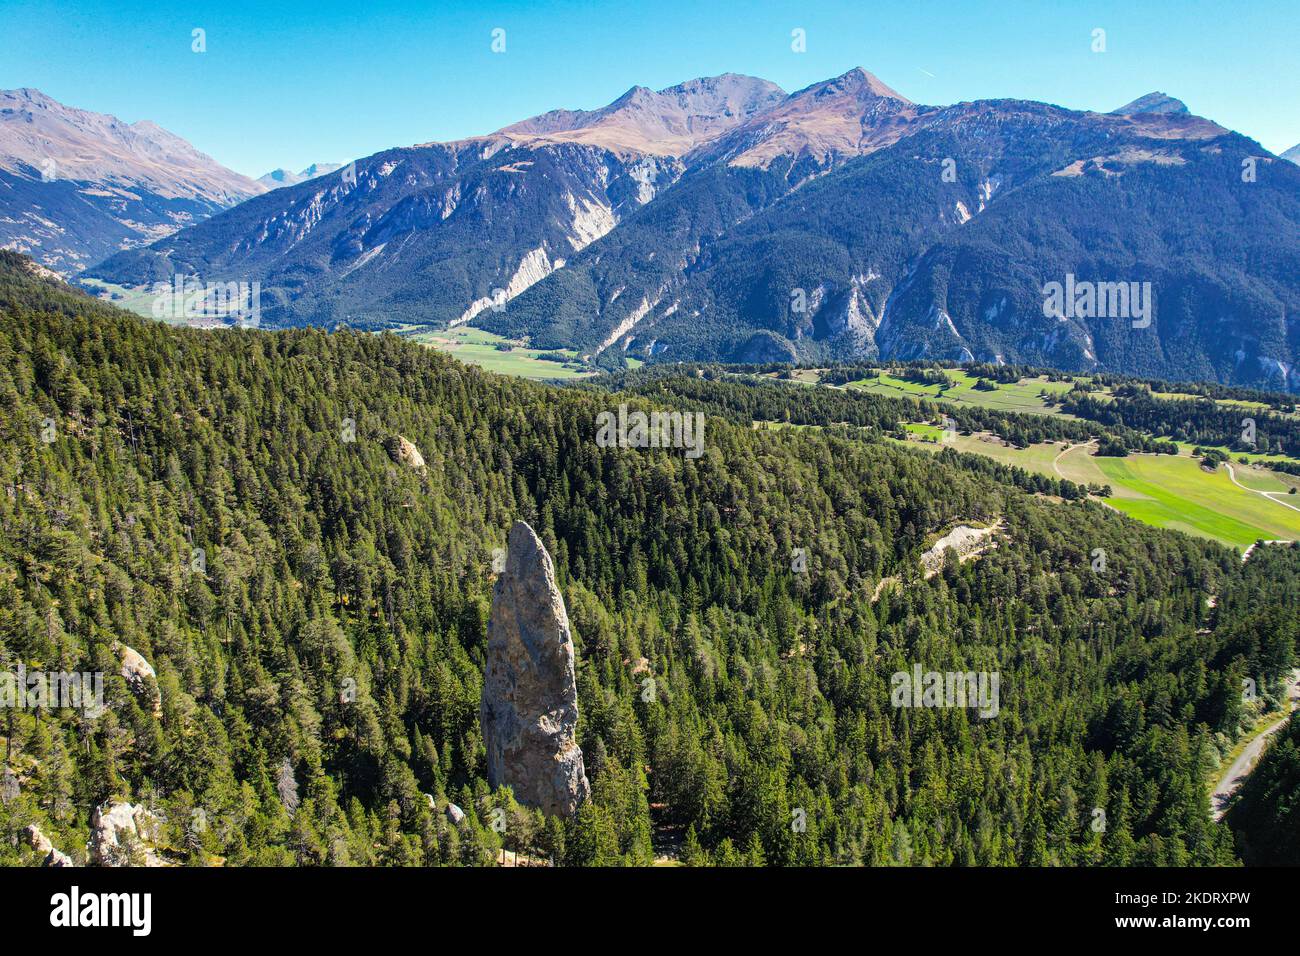 La aguja de roca Monolith en el valle de Maurienne, Vanoise, los Alpes franceses, Francia, Alpes, Alpino Foto de stock